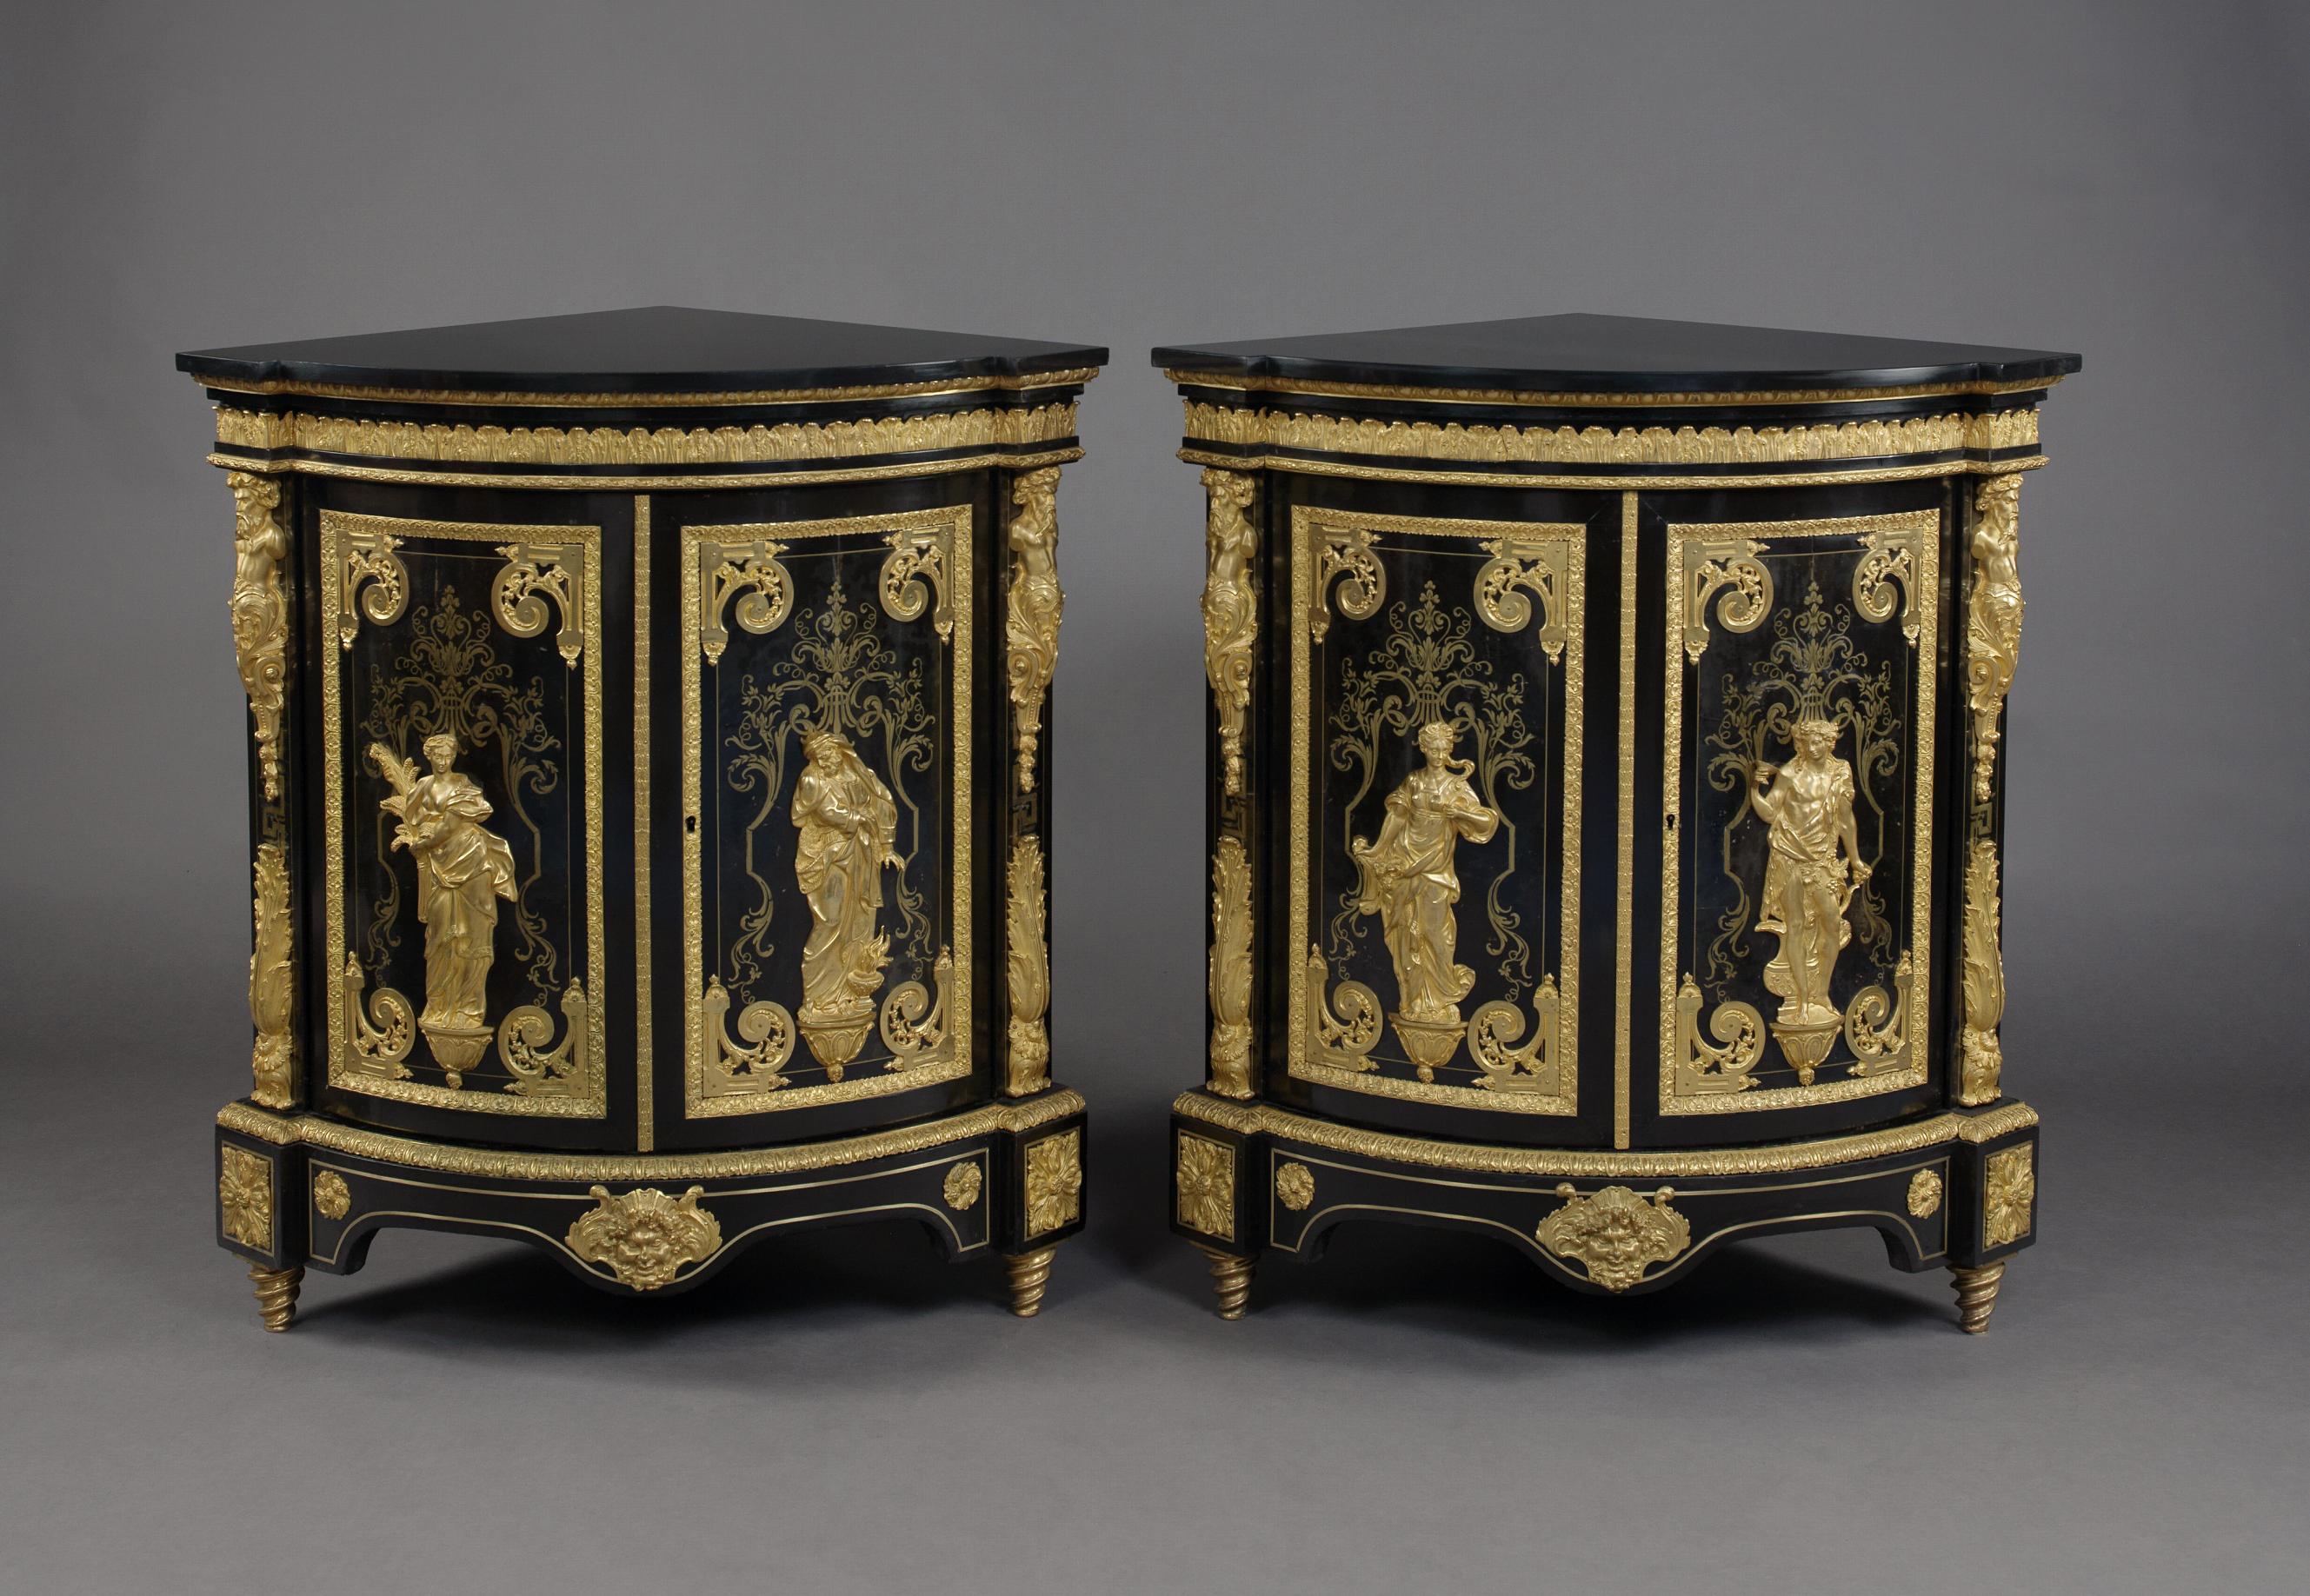 Ein feines Paar von vergoldeter Bronze montiert und Boulle Intarsien Ecke Schränke im Stil Louis XIV, die die vier Jahreszeiten, in der Art von Andre-Charles Boulle, von Béfort Jeune darstellen.

Frankreich, um 1870. 

Auf der Rückseite der